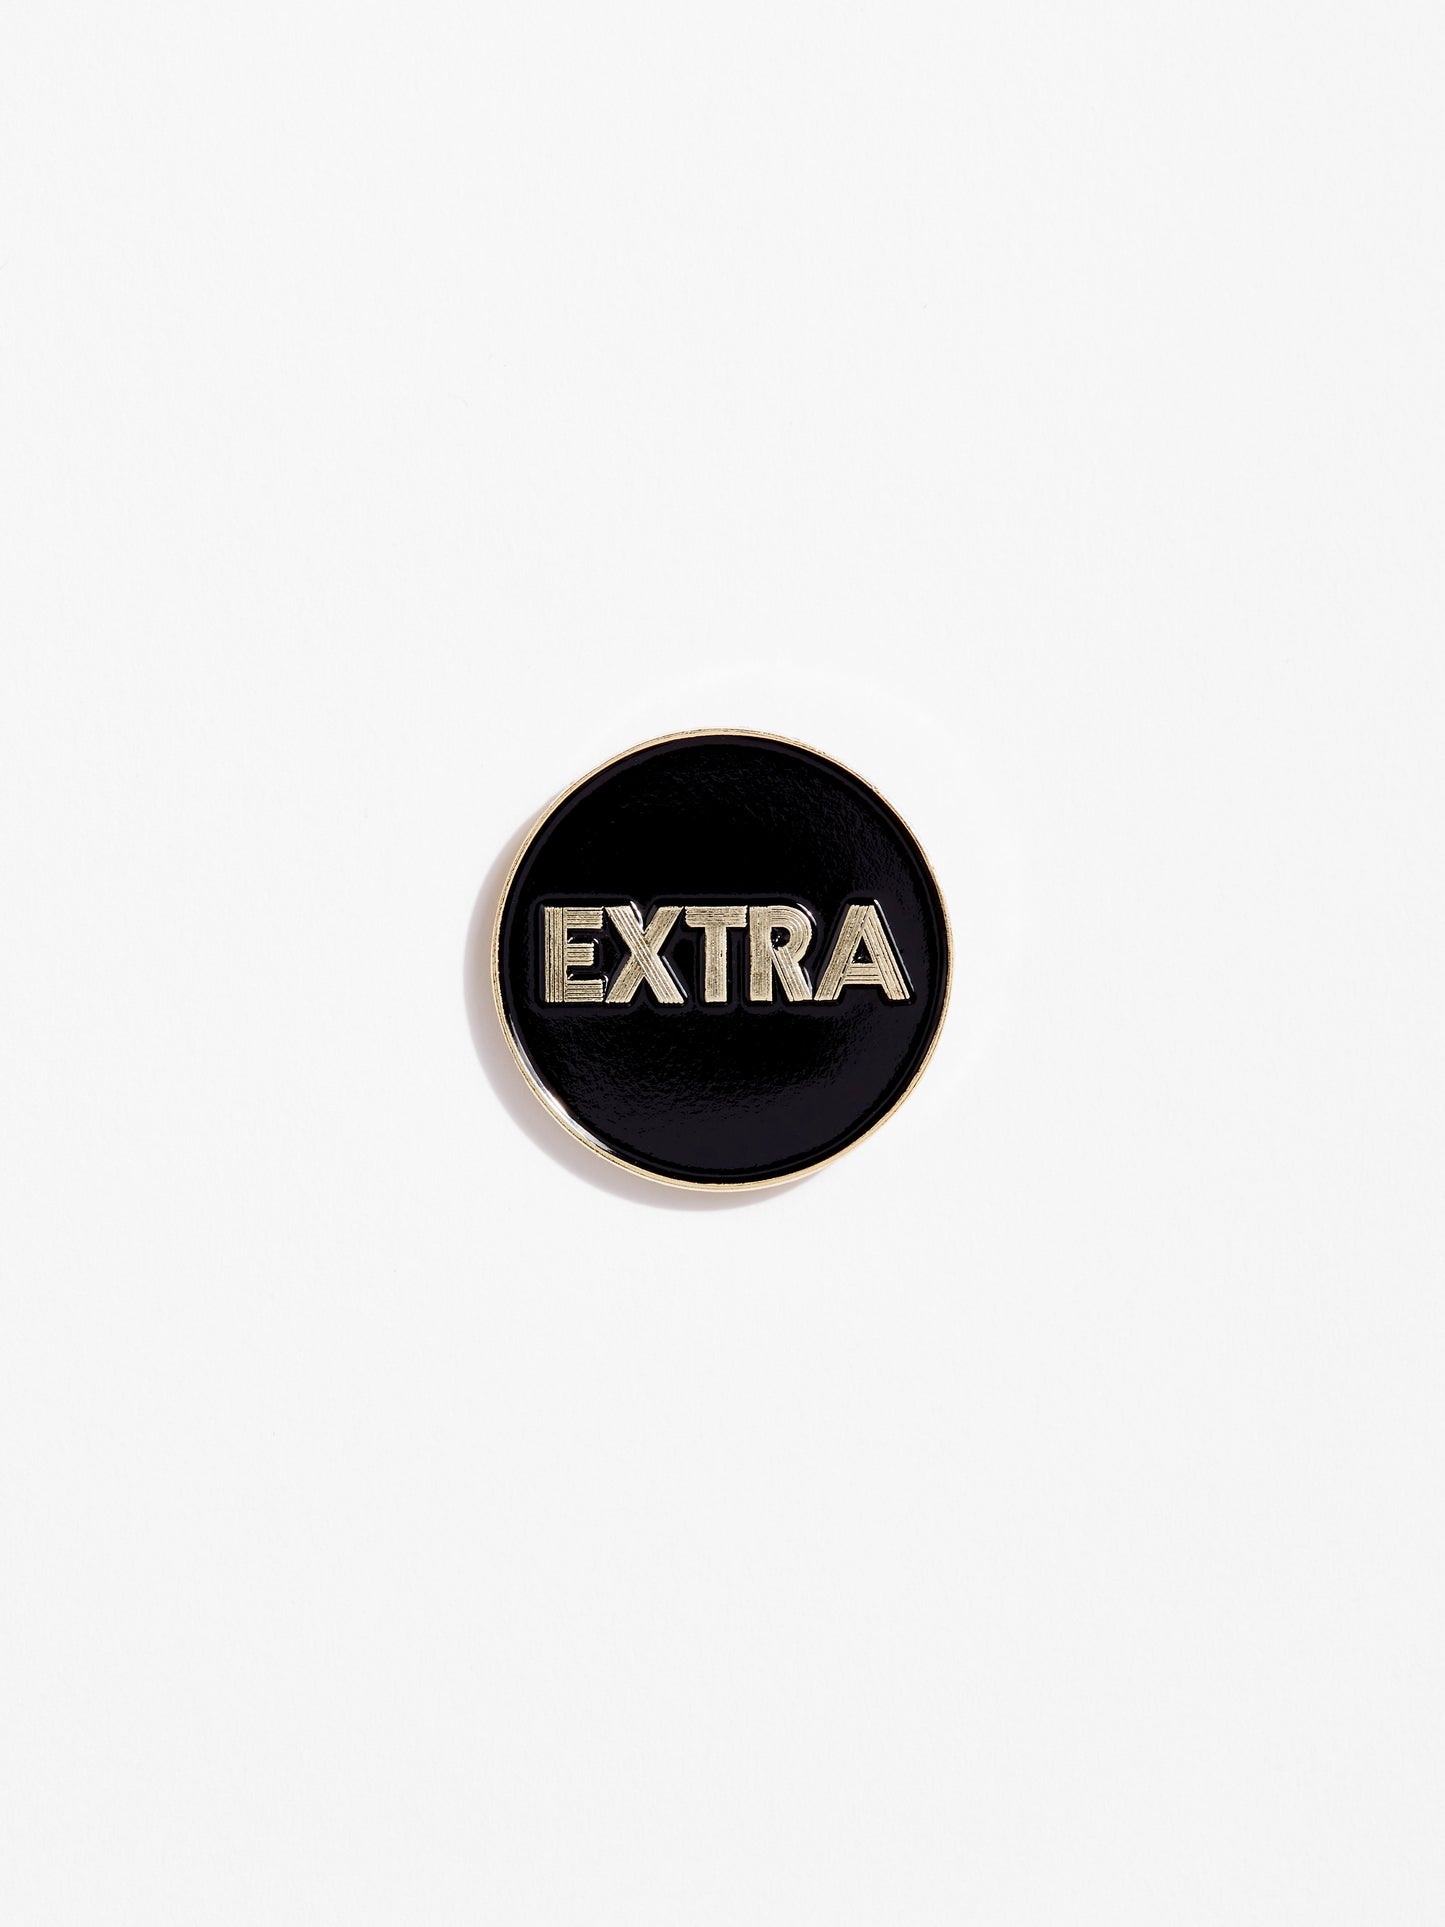 Extra Pin